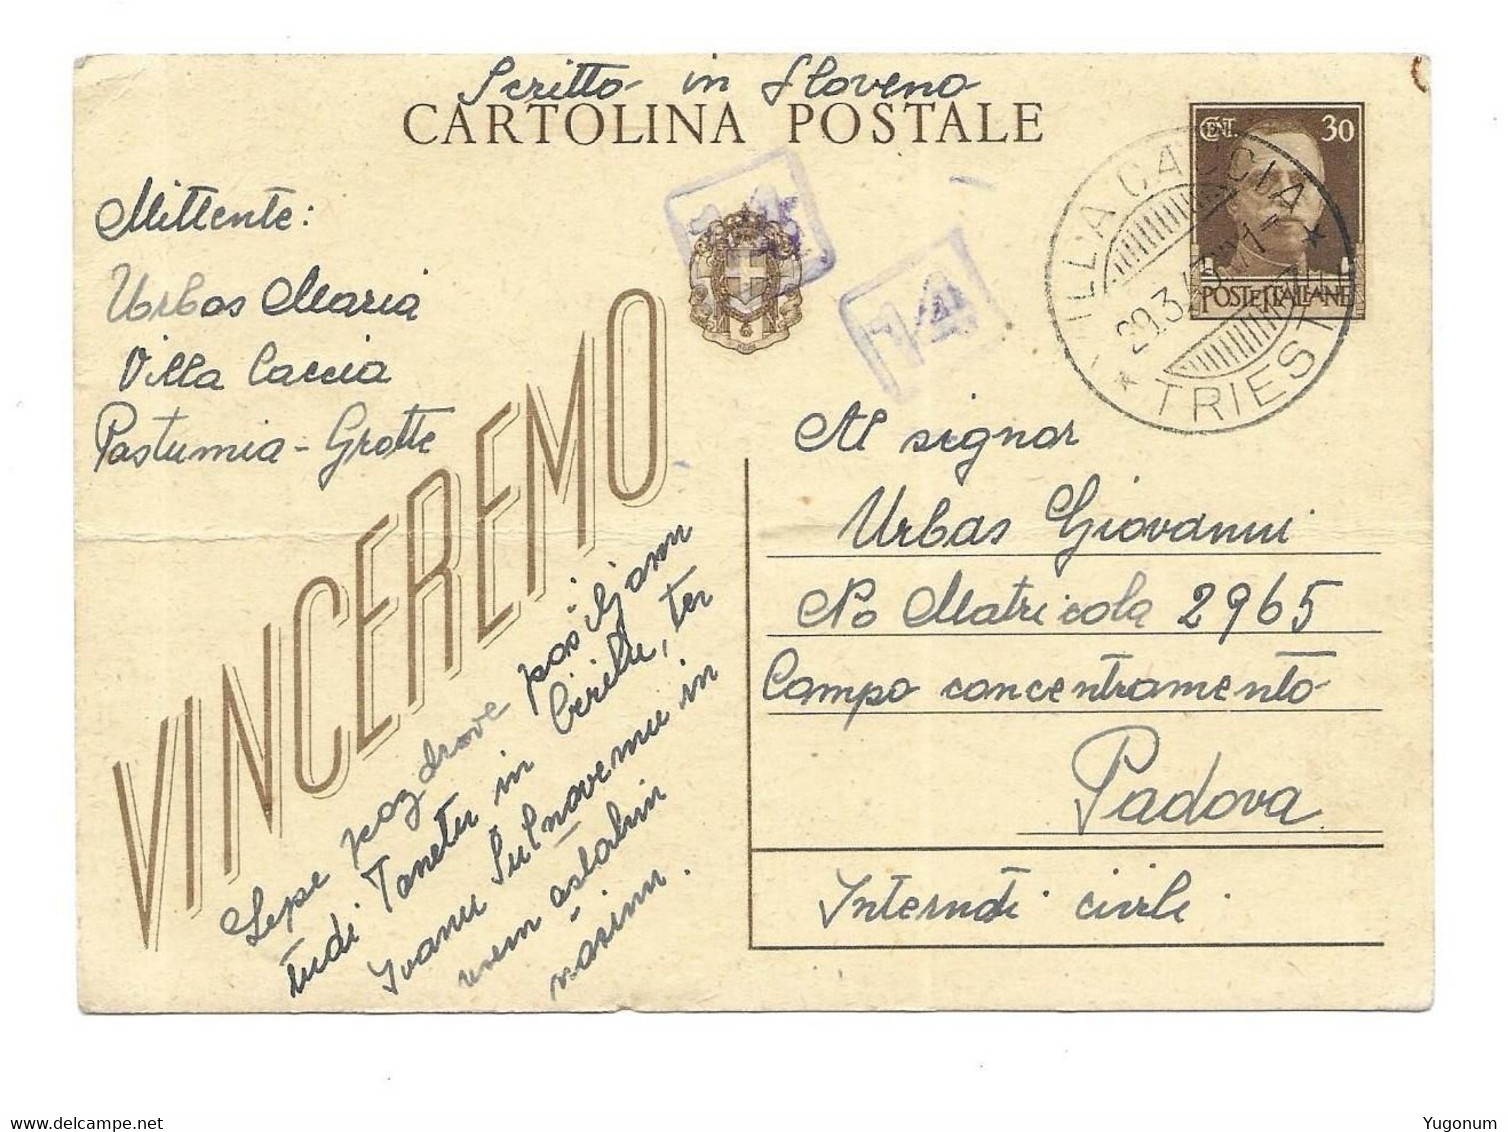 ITALY Slovenia 1943 Stationary With Stamp VILLA CACCIA (Kacja Vas)  Auxilliary Post Extremely Rare (1106) - Ljubljana